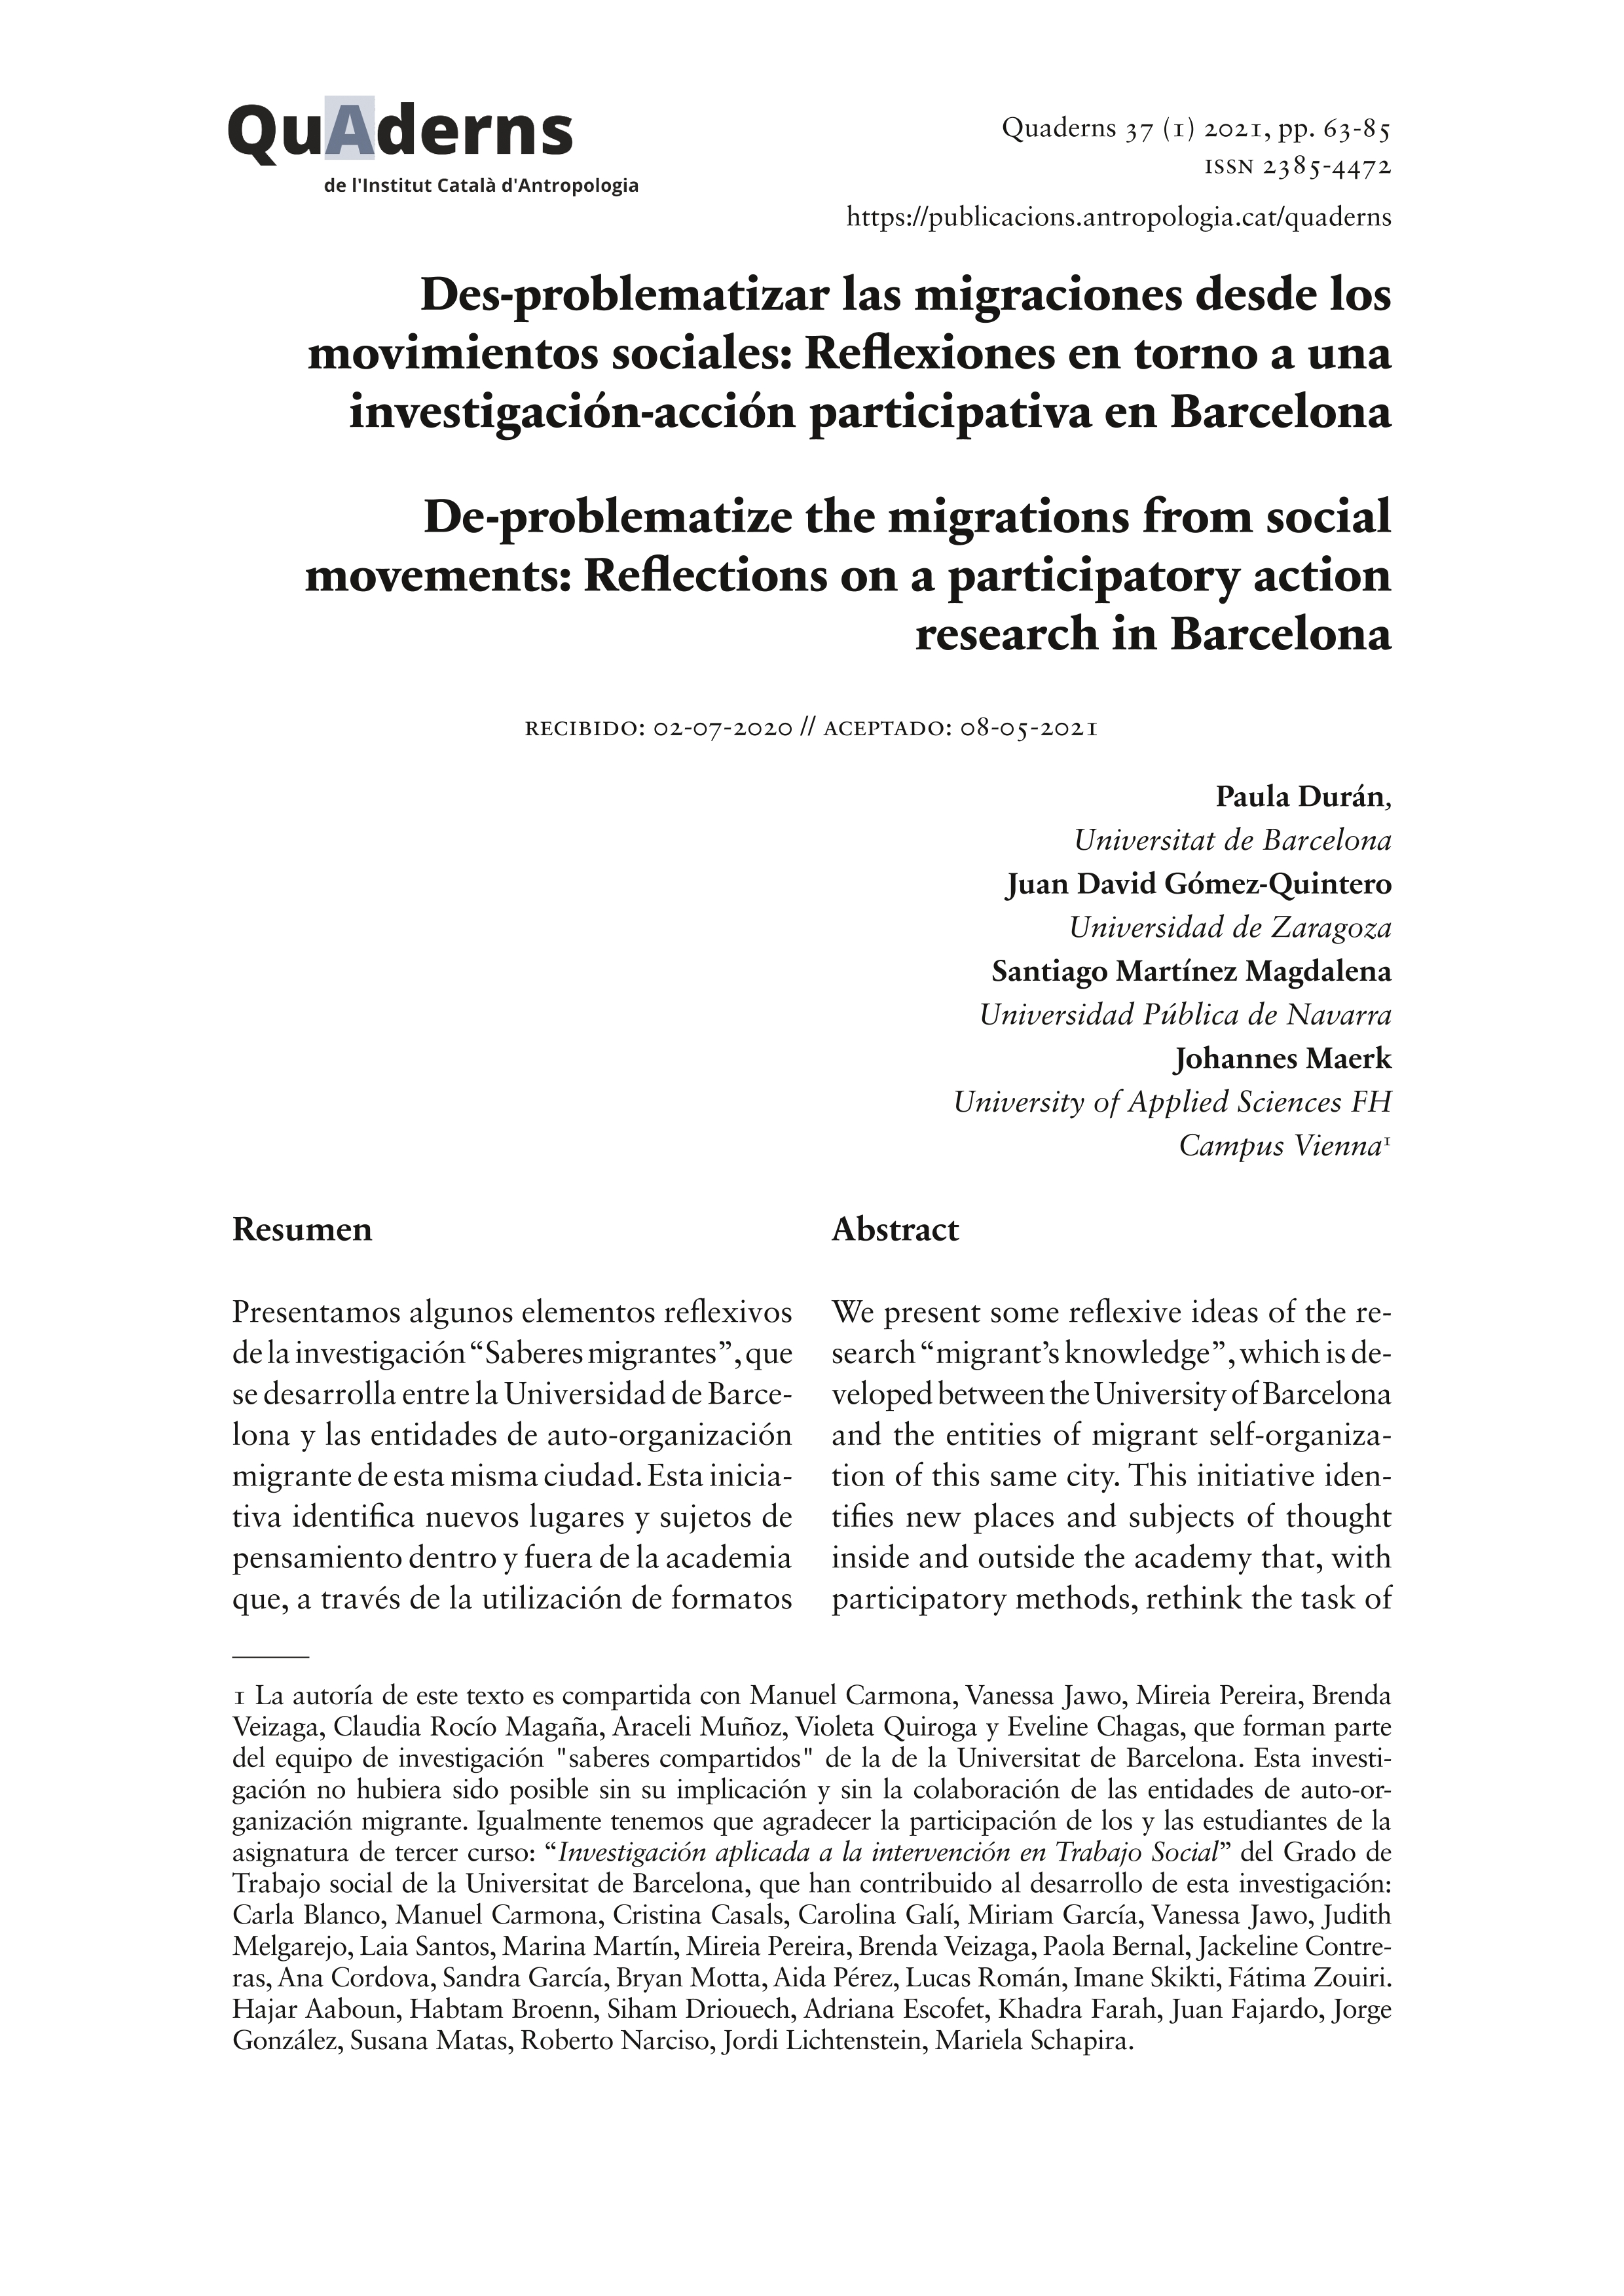 Des-problematizar las migraciones desde los movimientos sociales: Reflexiones en torno a una investigación-acción participativa en Barcelona